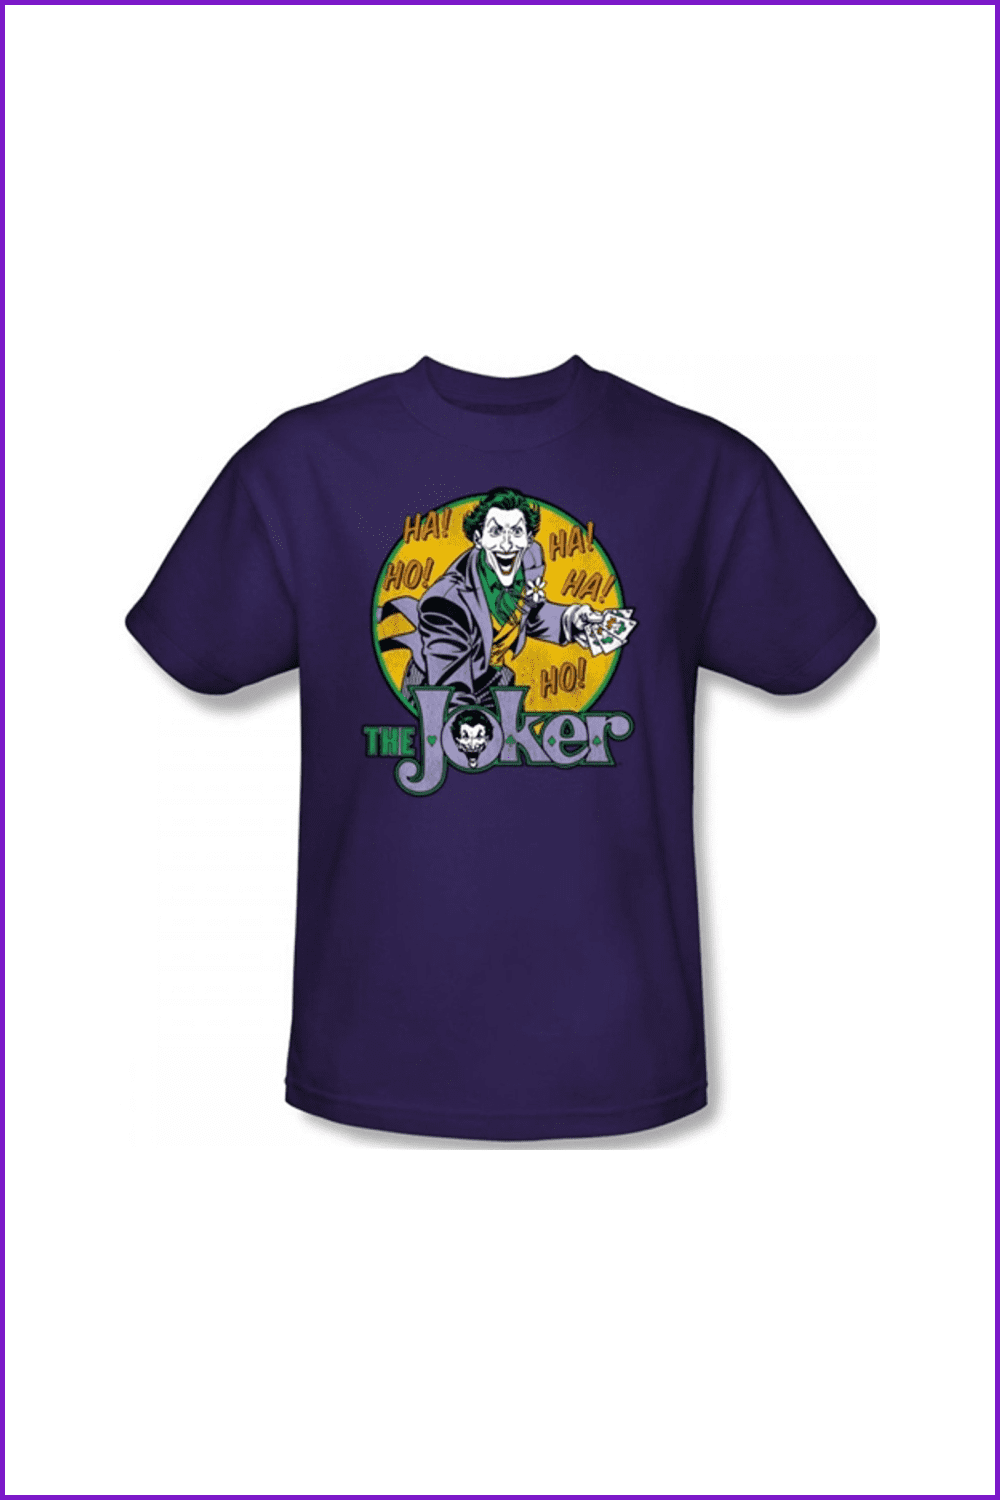 The Joker T-Shirt.